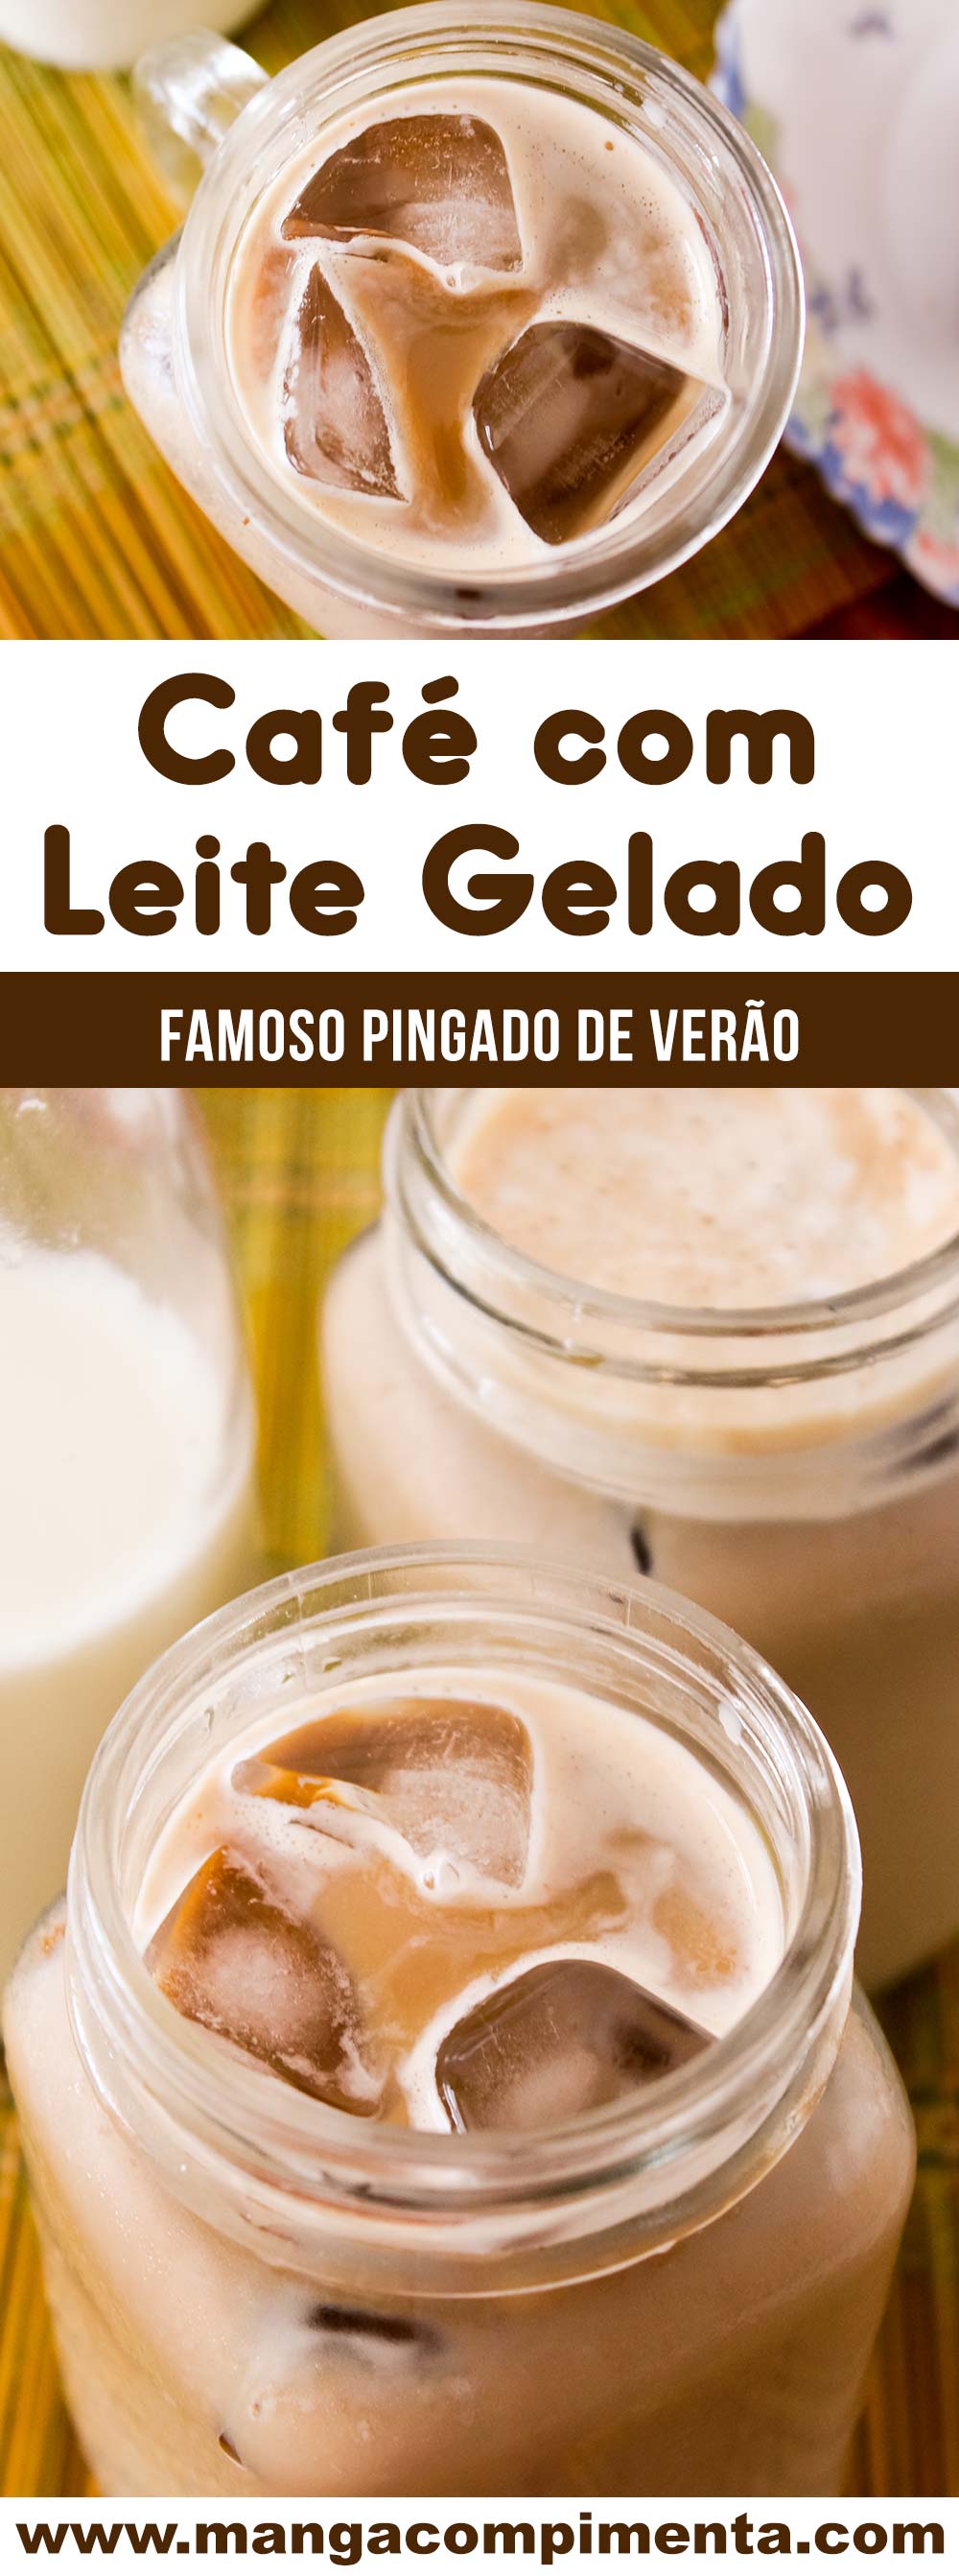 Receita de Café com Leite Gelado - prepare o famoso pingado gelado para os dias quentes!